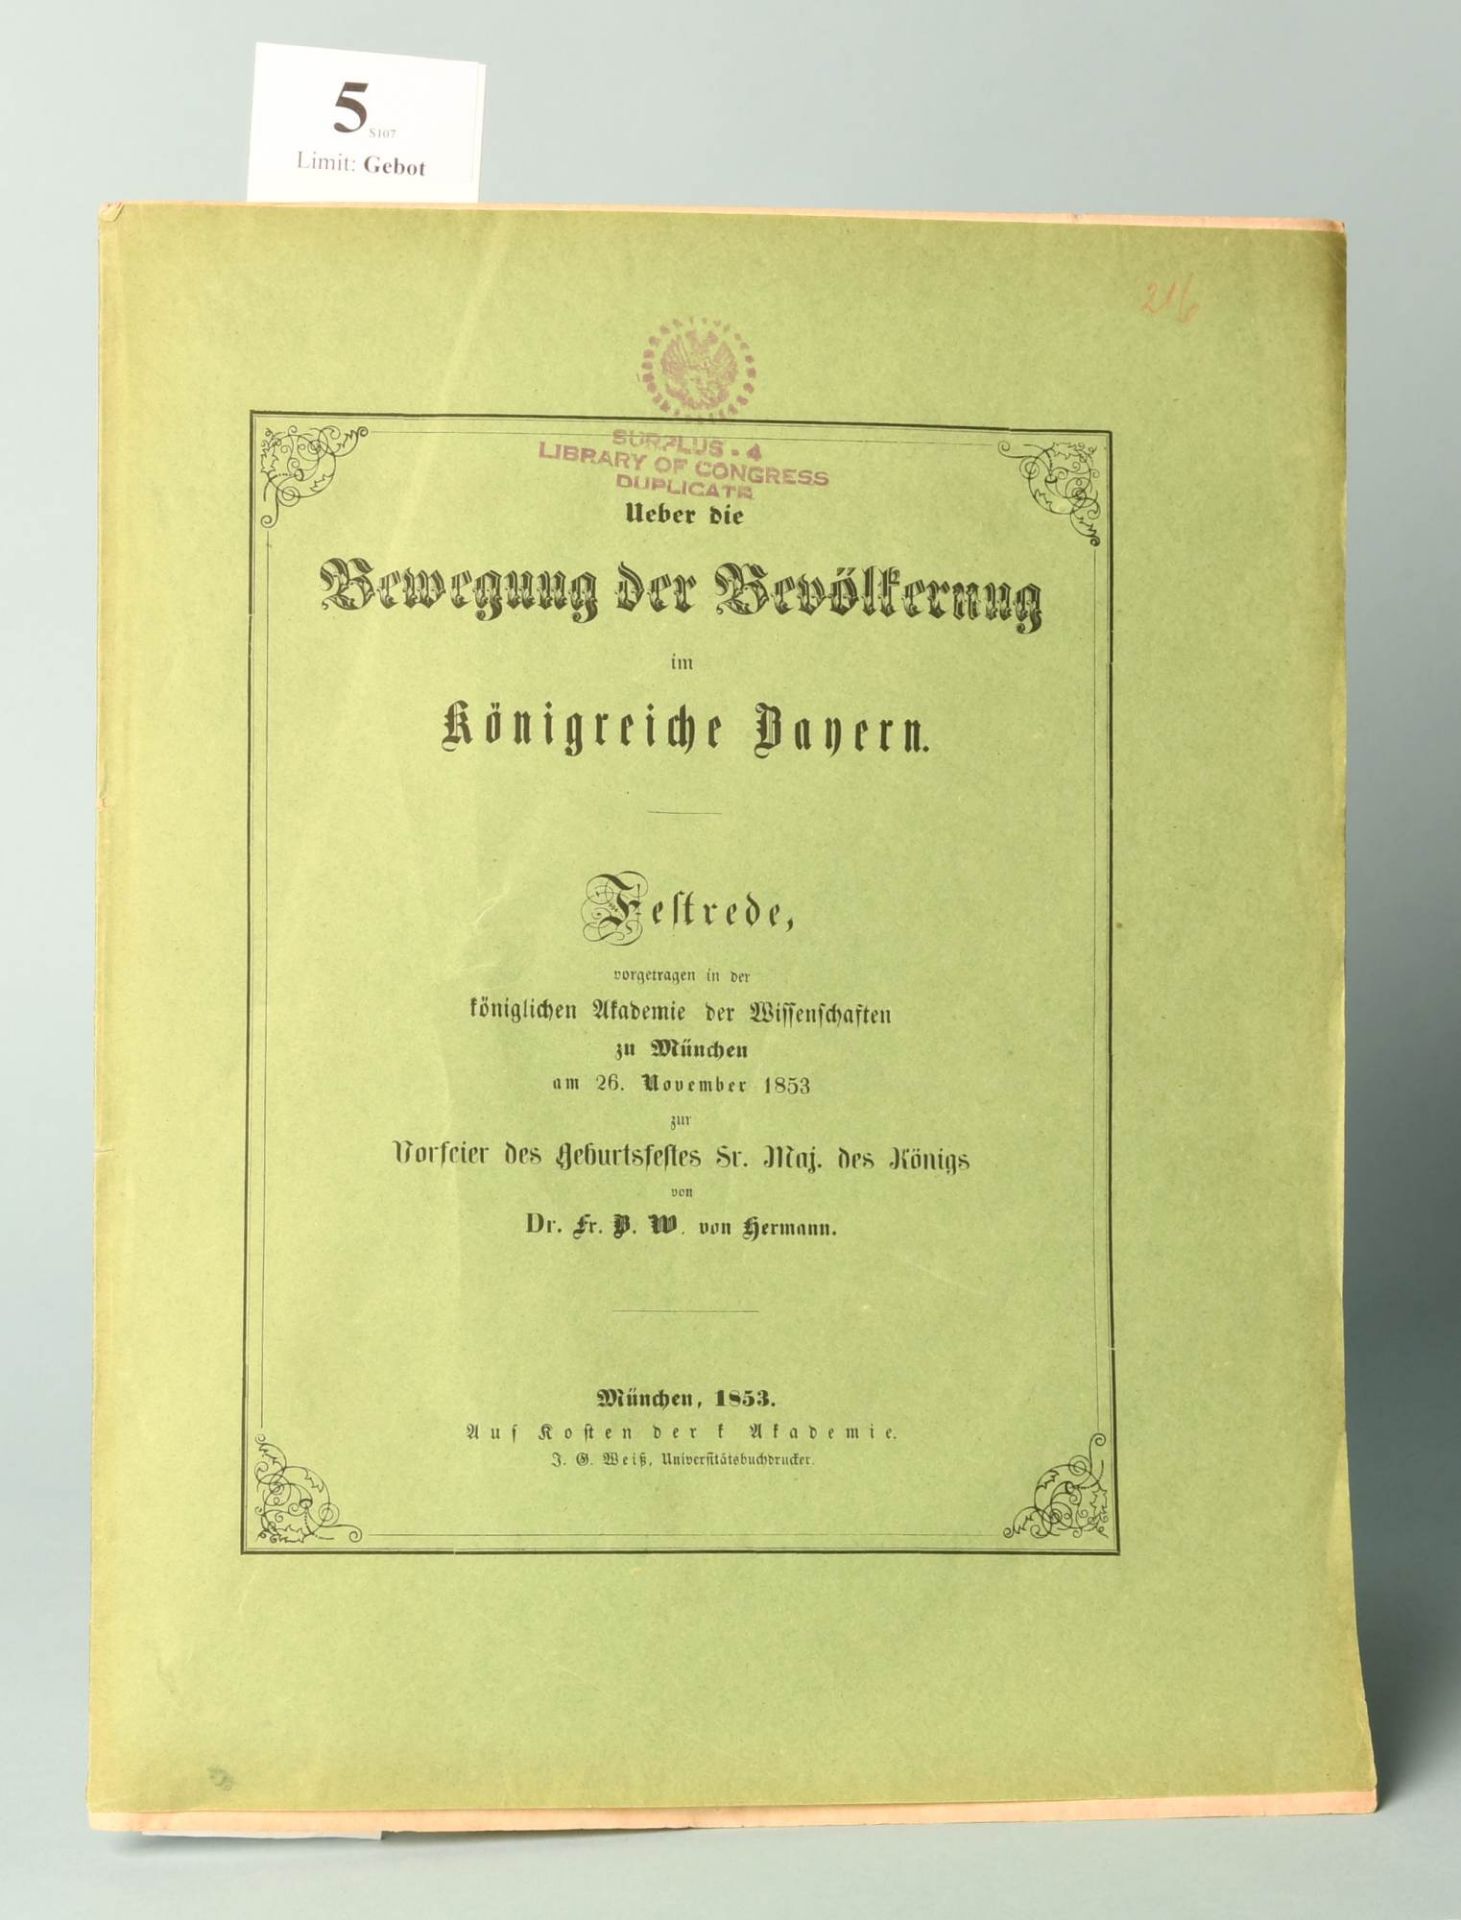 Hermann, F. "Bewegung der Bevölkerung im Königreiche Bayern"